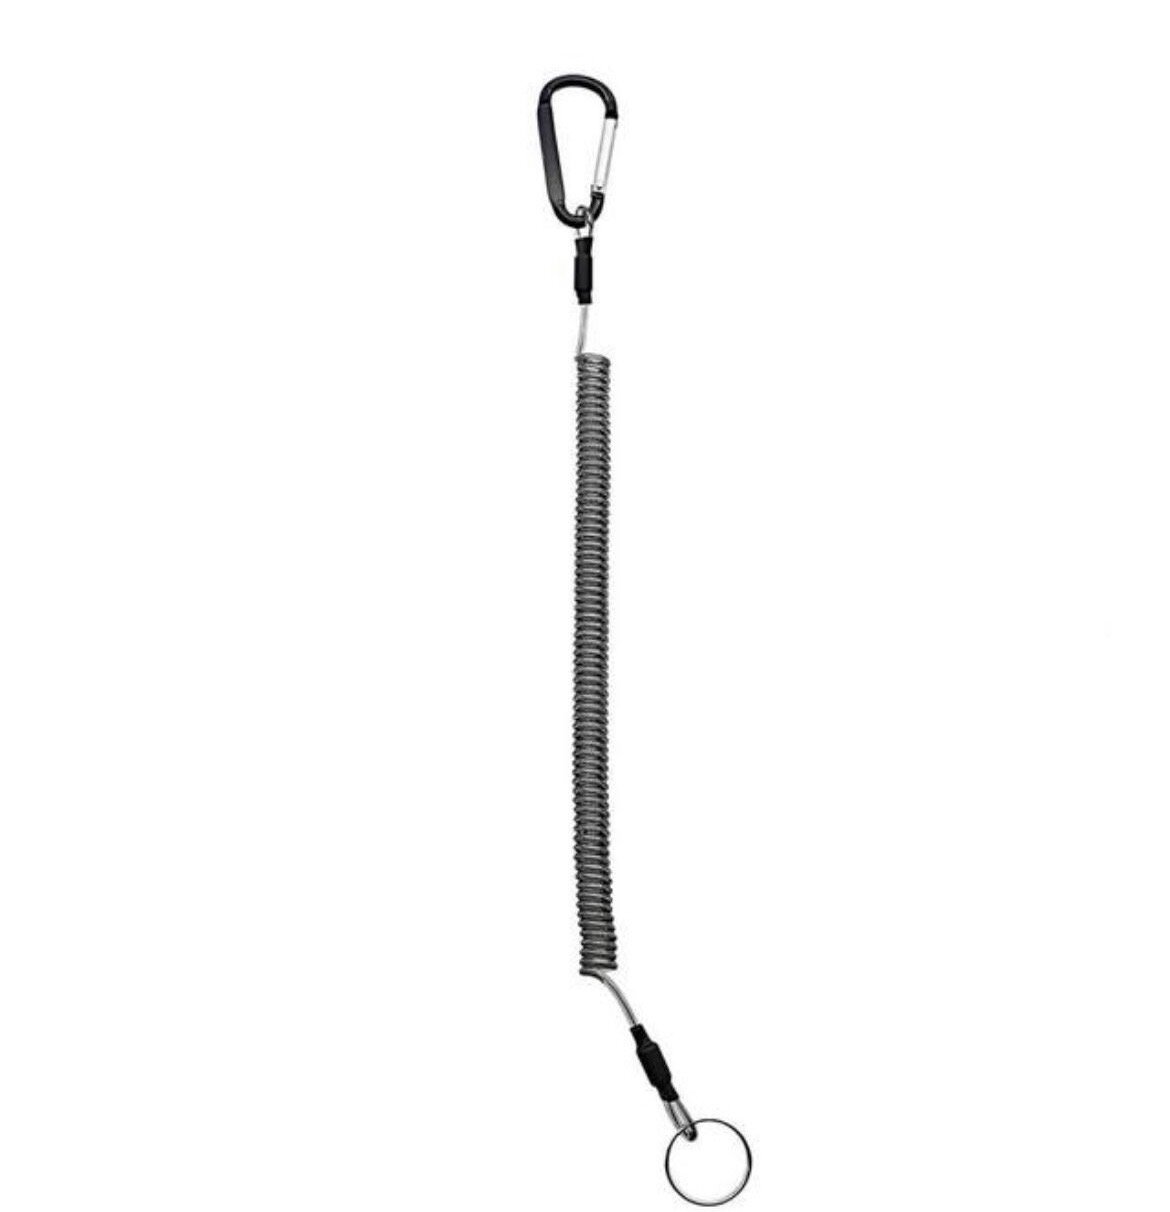 Пружинный шнур с карабином / страховочный тросик для инструментов и ножей / бейджа и ключей